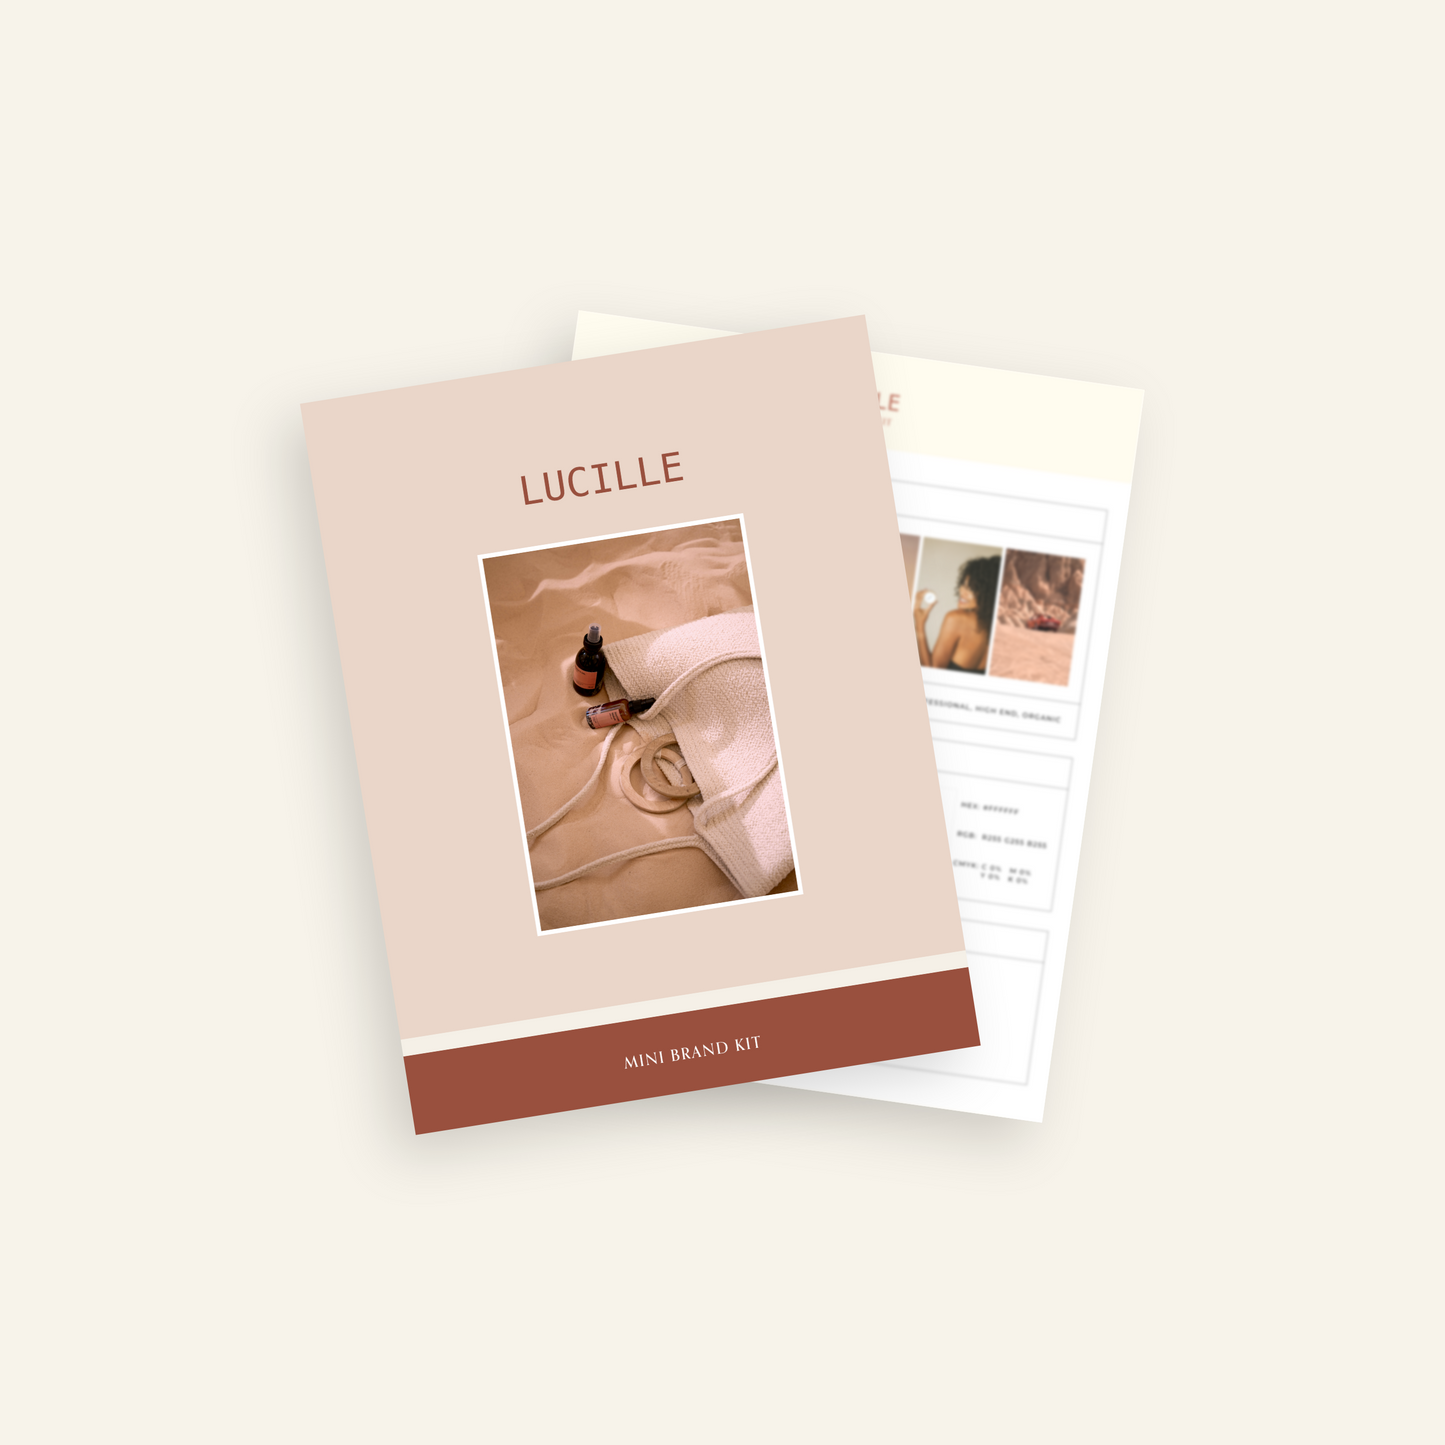 Lucille - Branding Kit